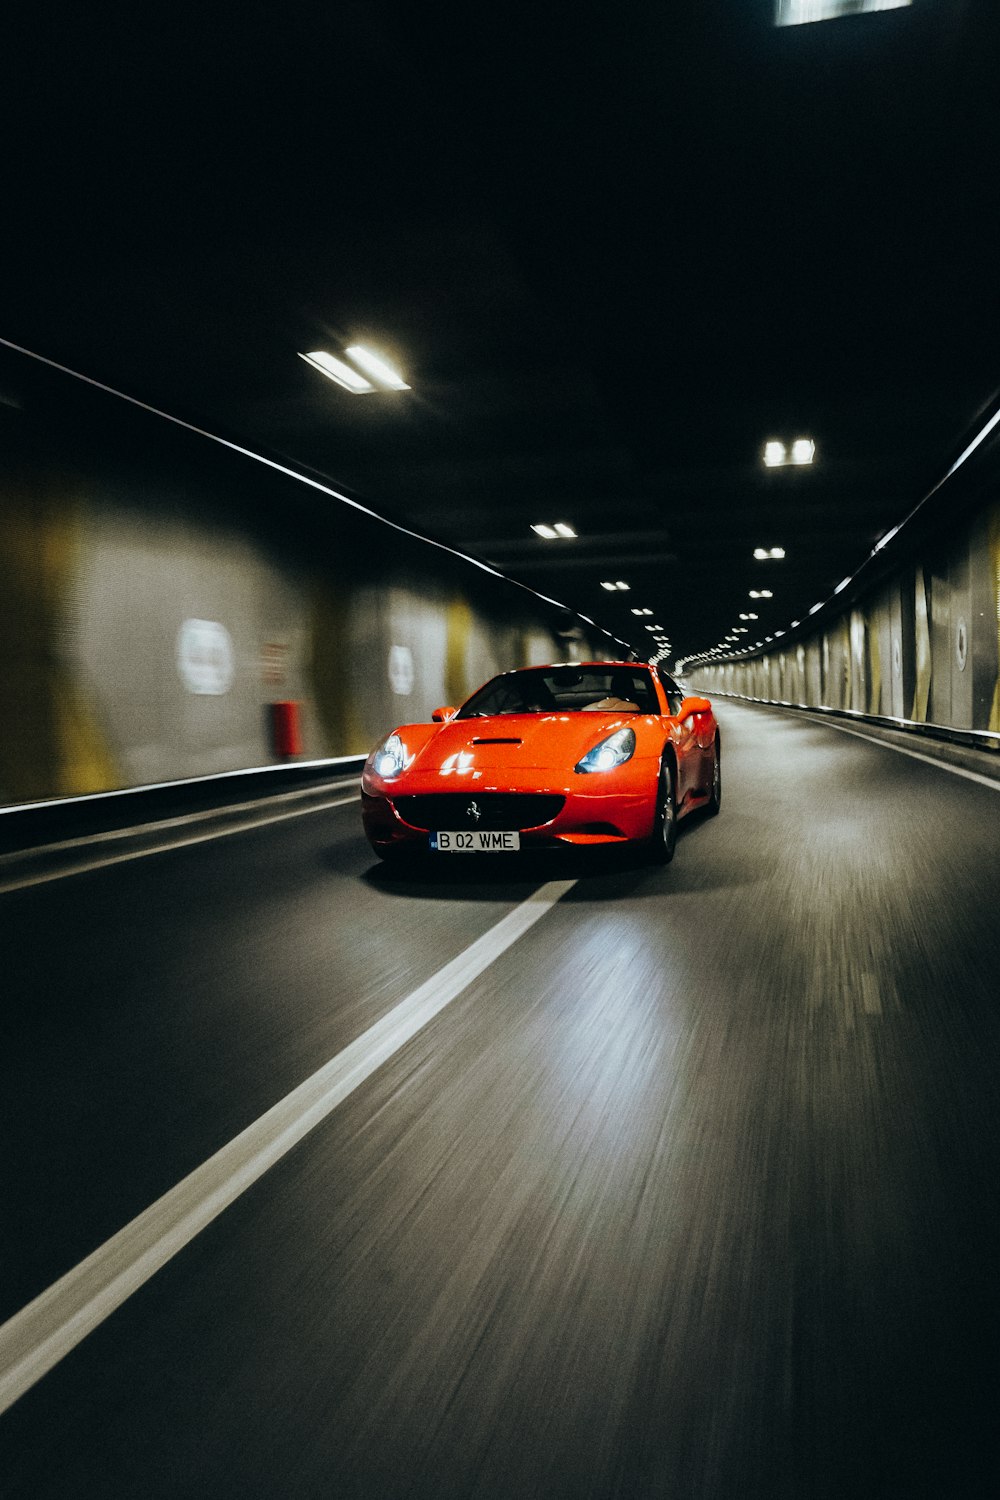 Ein roter Sportwagen fährt durch einen Tunnel